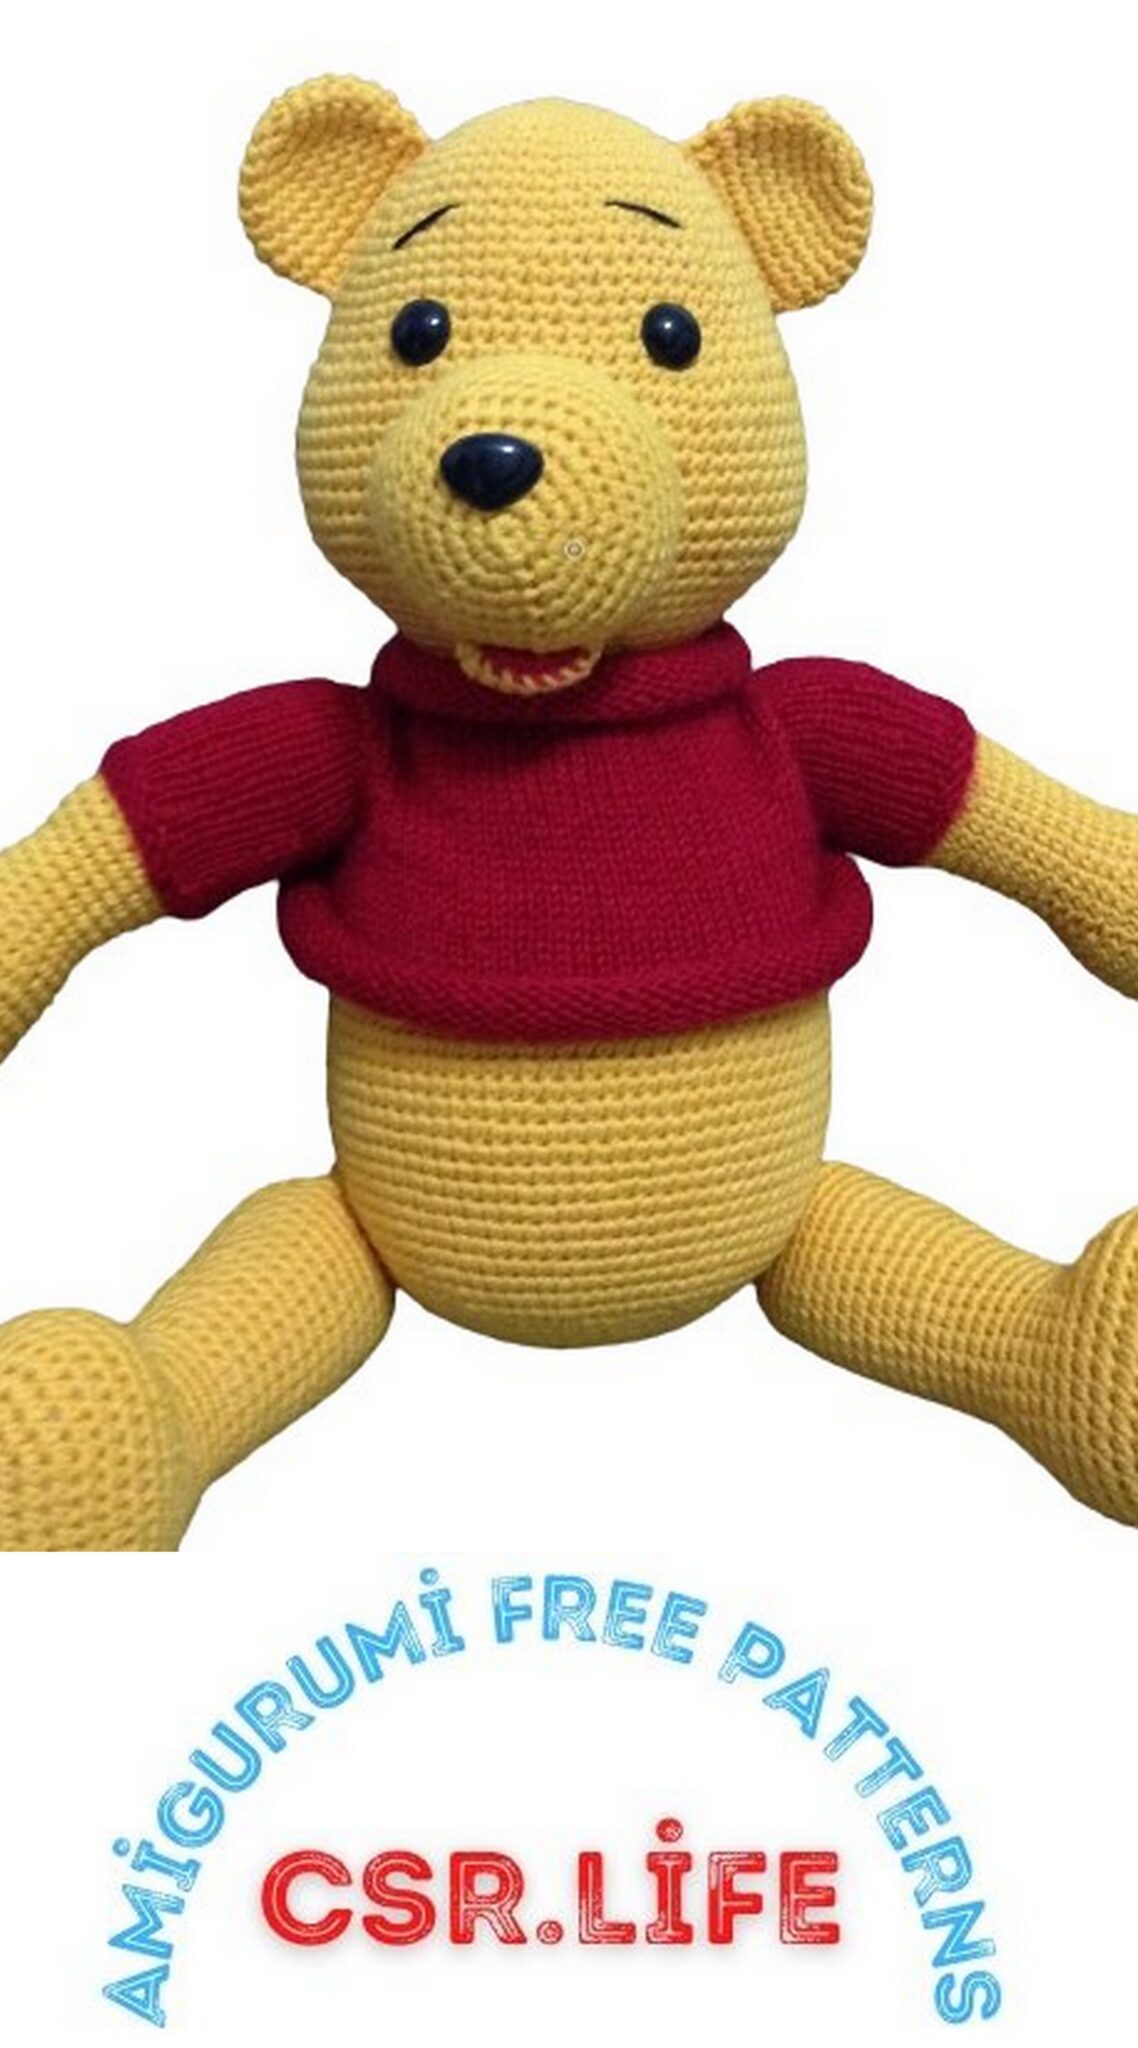 Winnie the Pooh Amigurumi Free Crochet Pattern – Csr.life